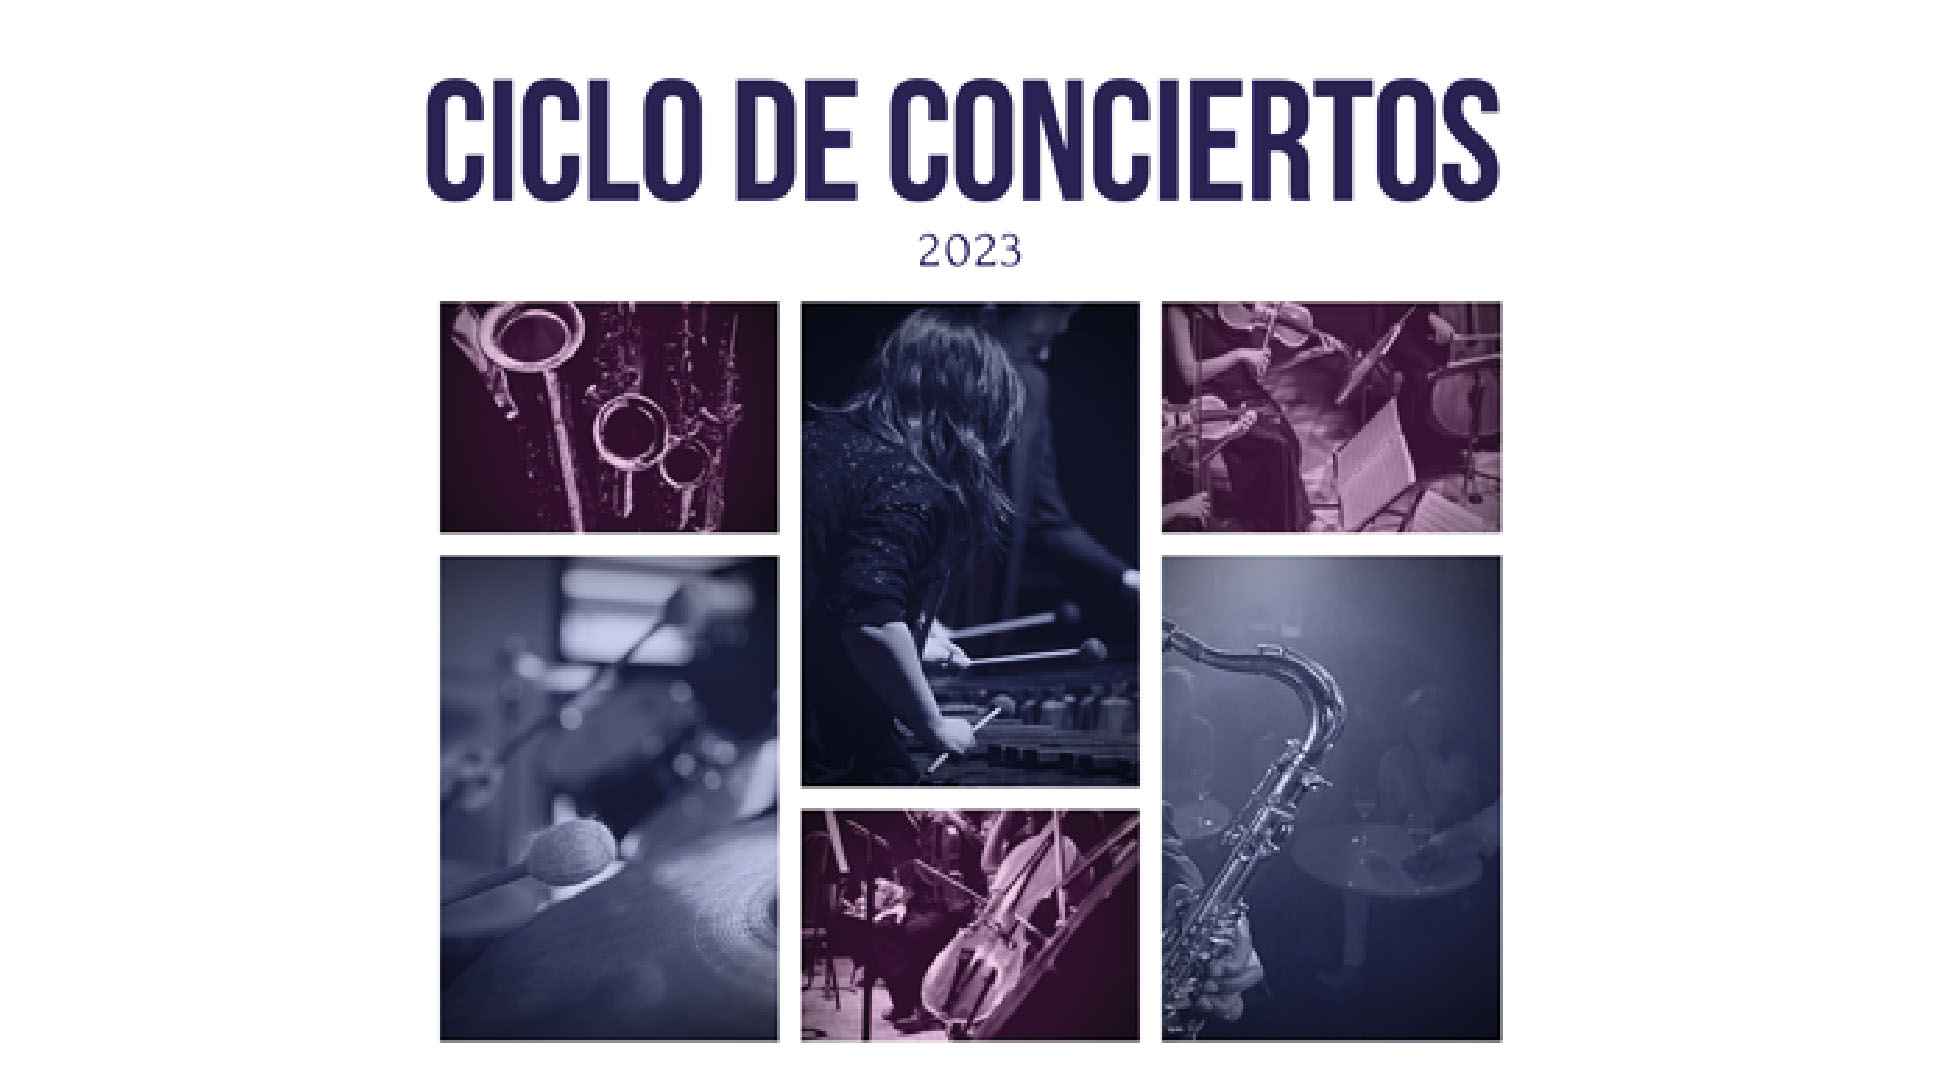 Conjunto de saxofones del CSMM “Massotti” en la Fundación Mediterráneo Murcia